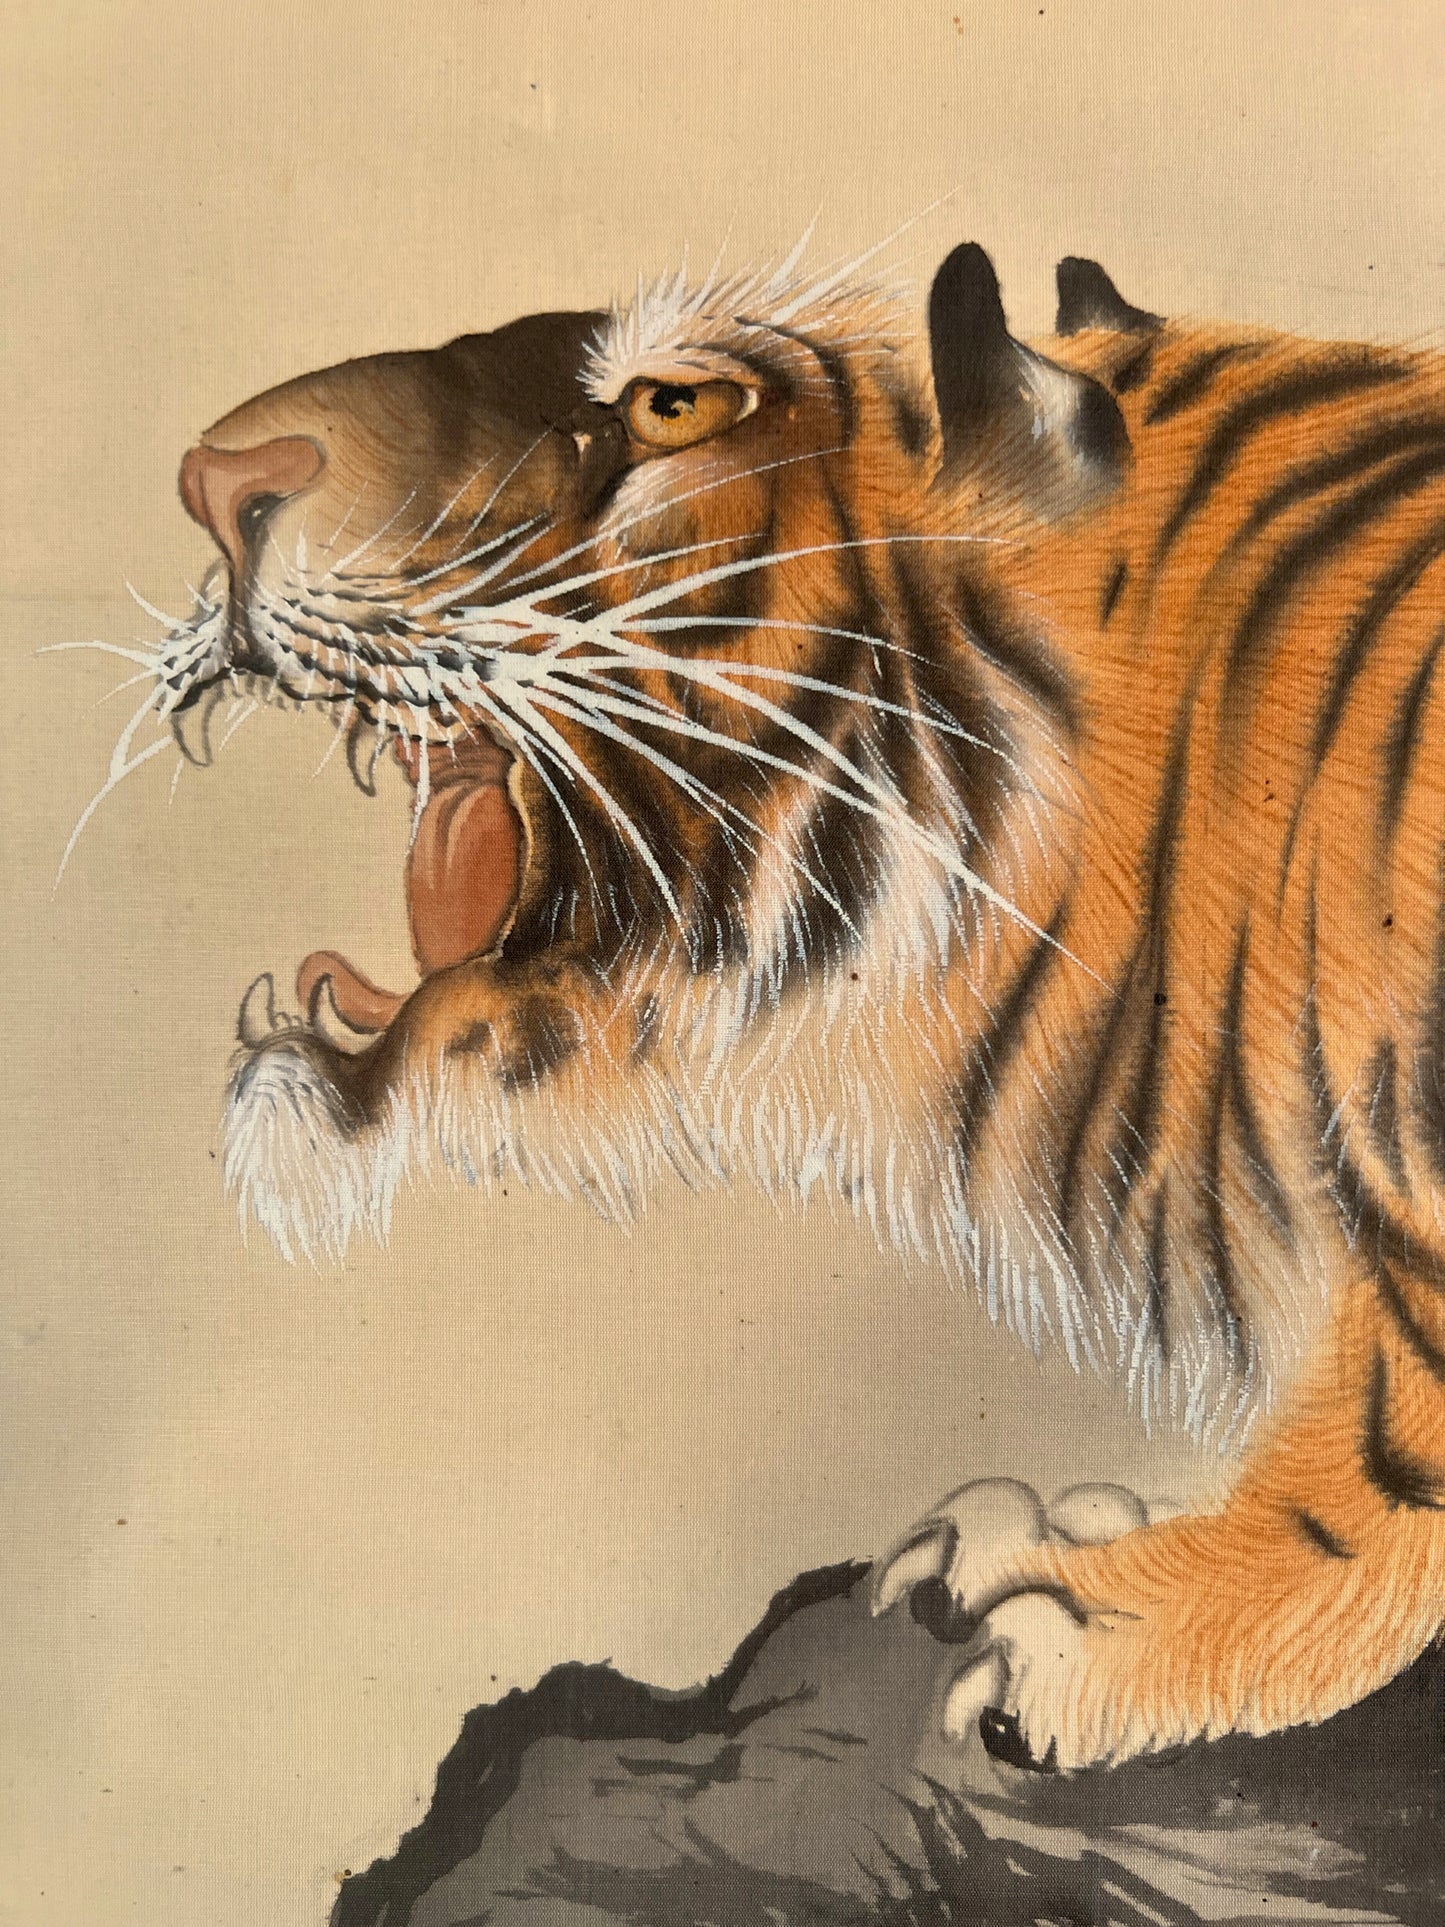 kakejiku japonais rouleau suspendu tigre rugissant, gros plan de la tête du tigre gueule ouverte